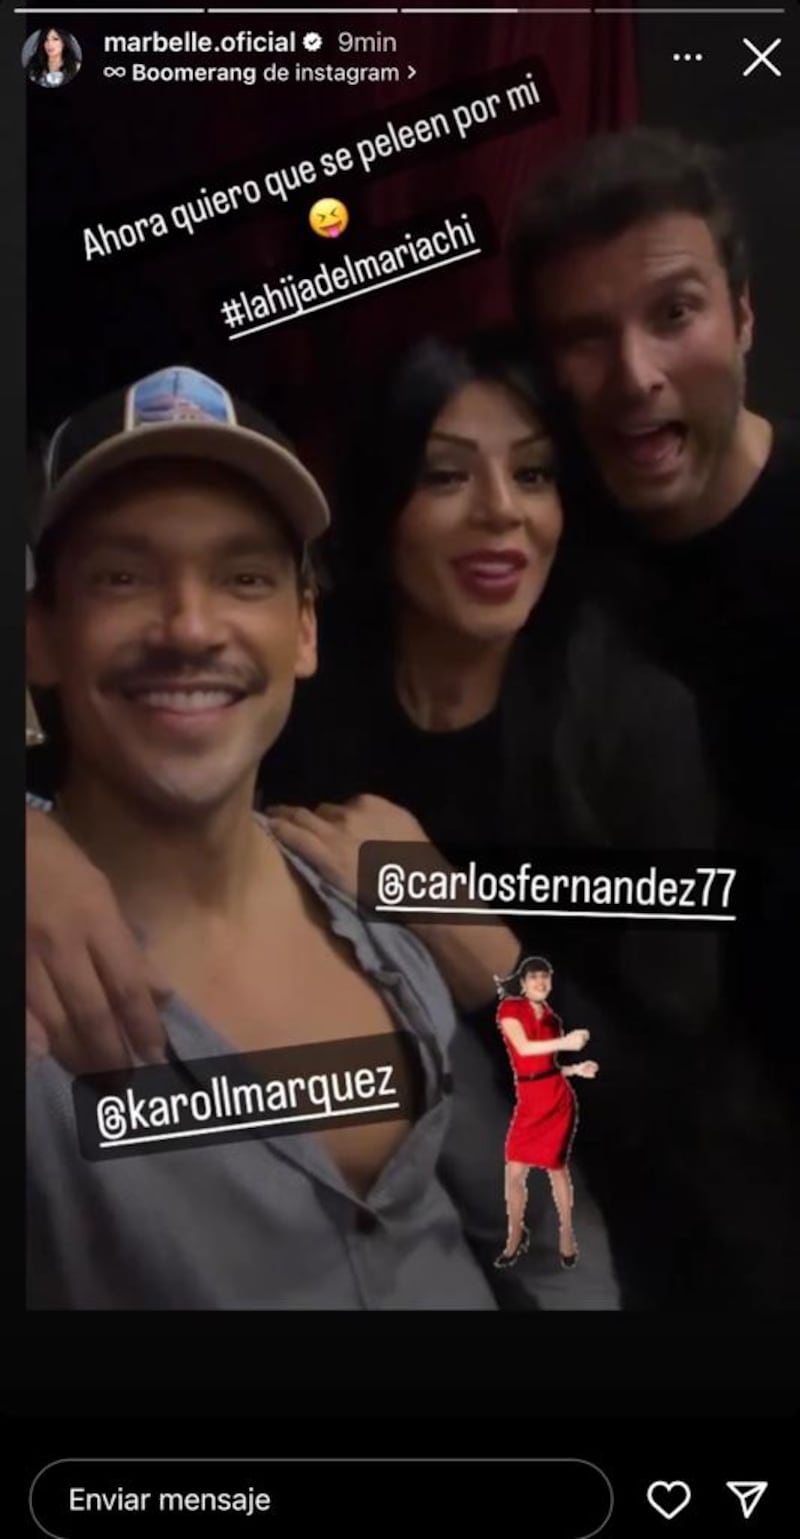 Marbelle se mostró junto a Karoll Márquez, exparticipante de MasterChef Celebrity y Carlos Fernández asegurando que se iban a pelean por ella